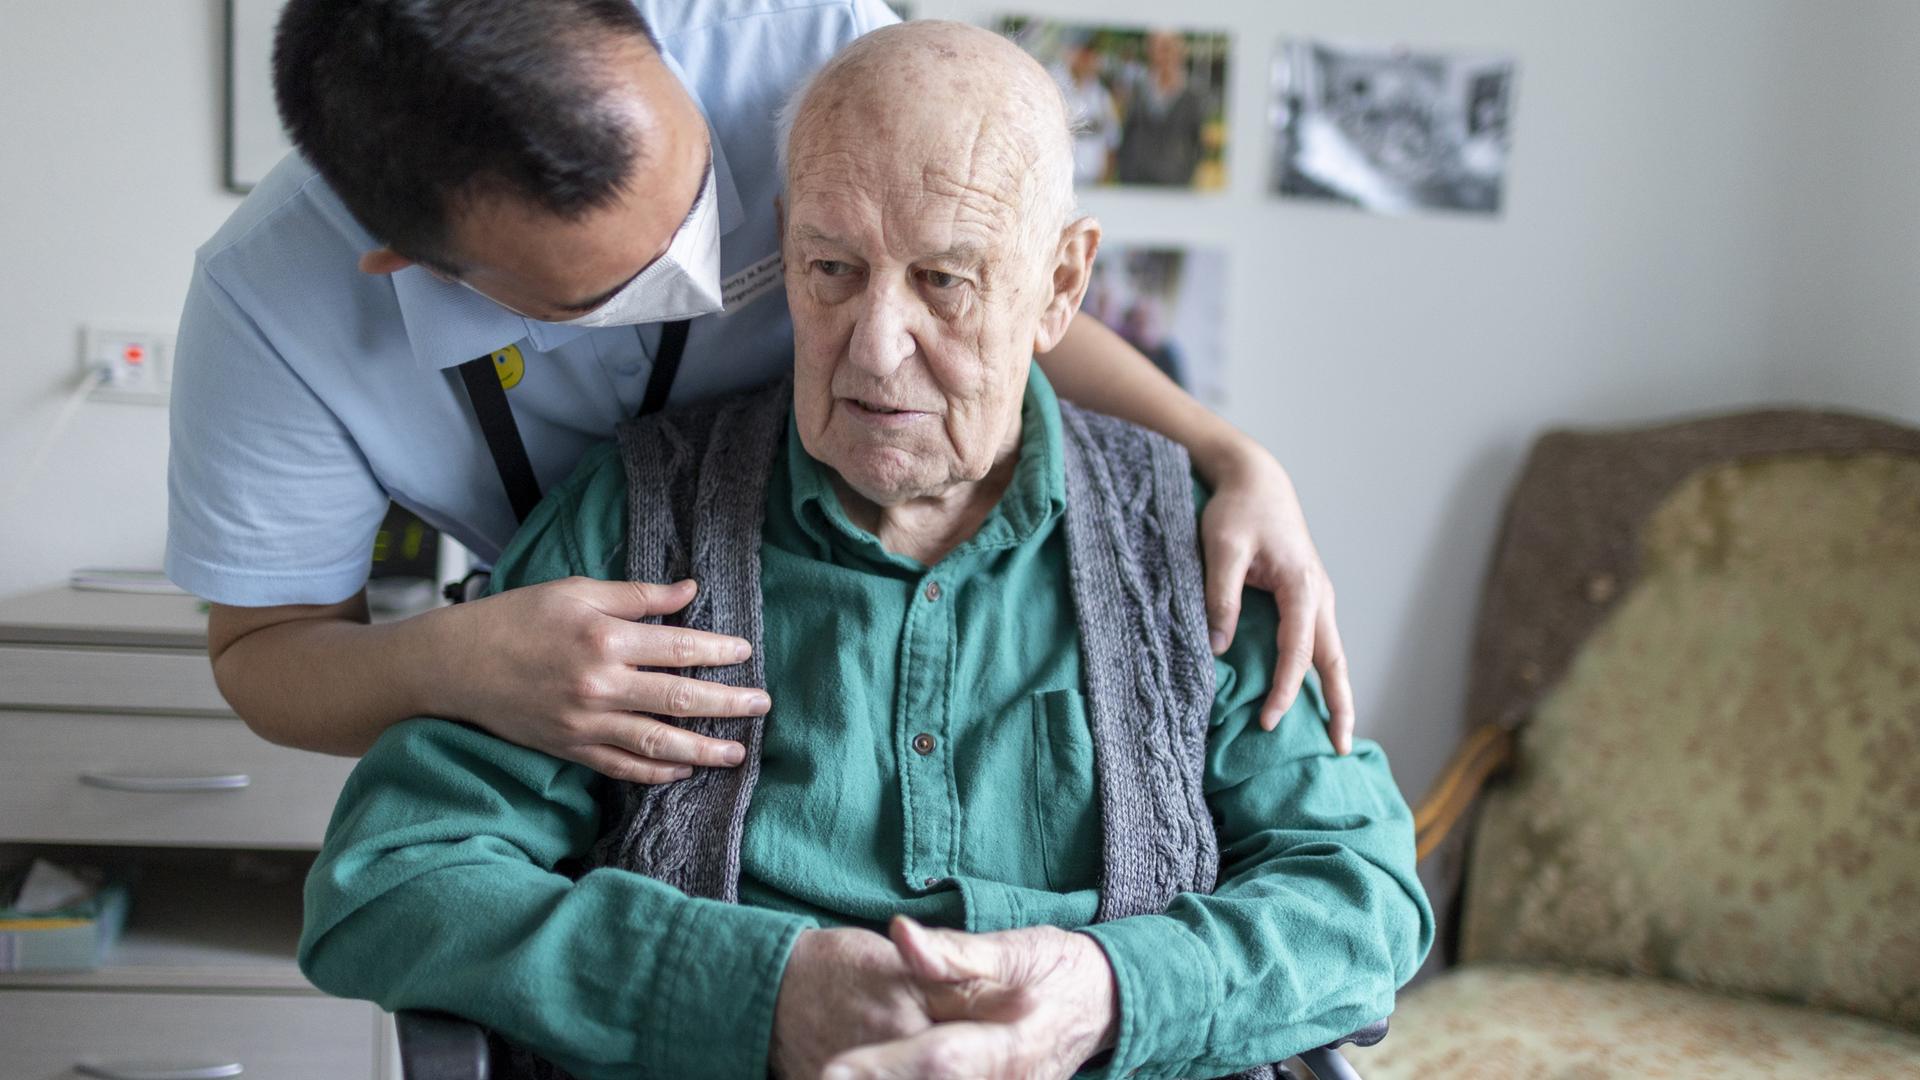 Ein Altenpfleger beugt sich über die Schulter eines alten, sitzenden Mannes und wendet sich ihm zu.